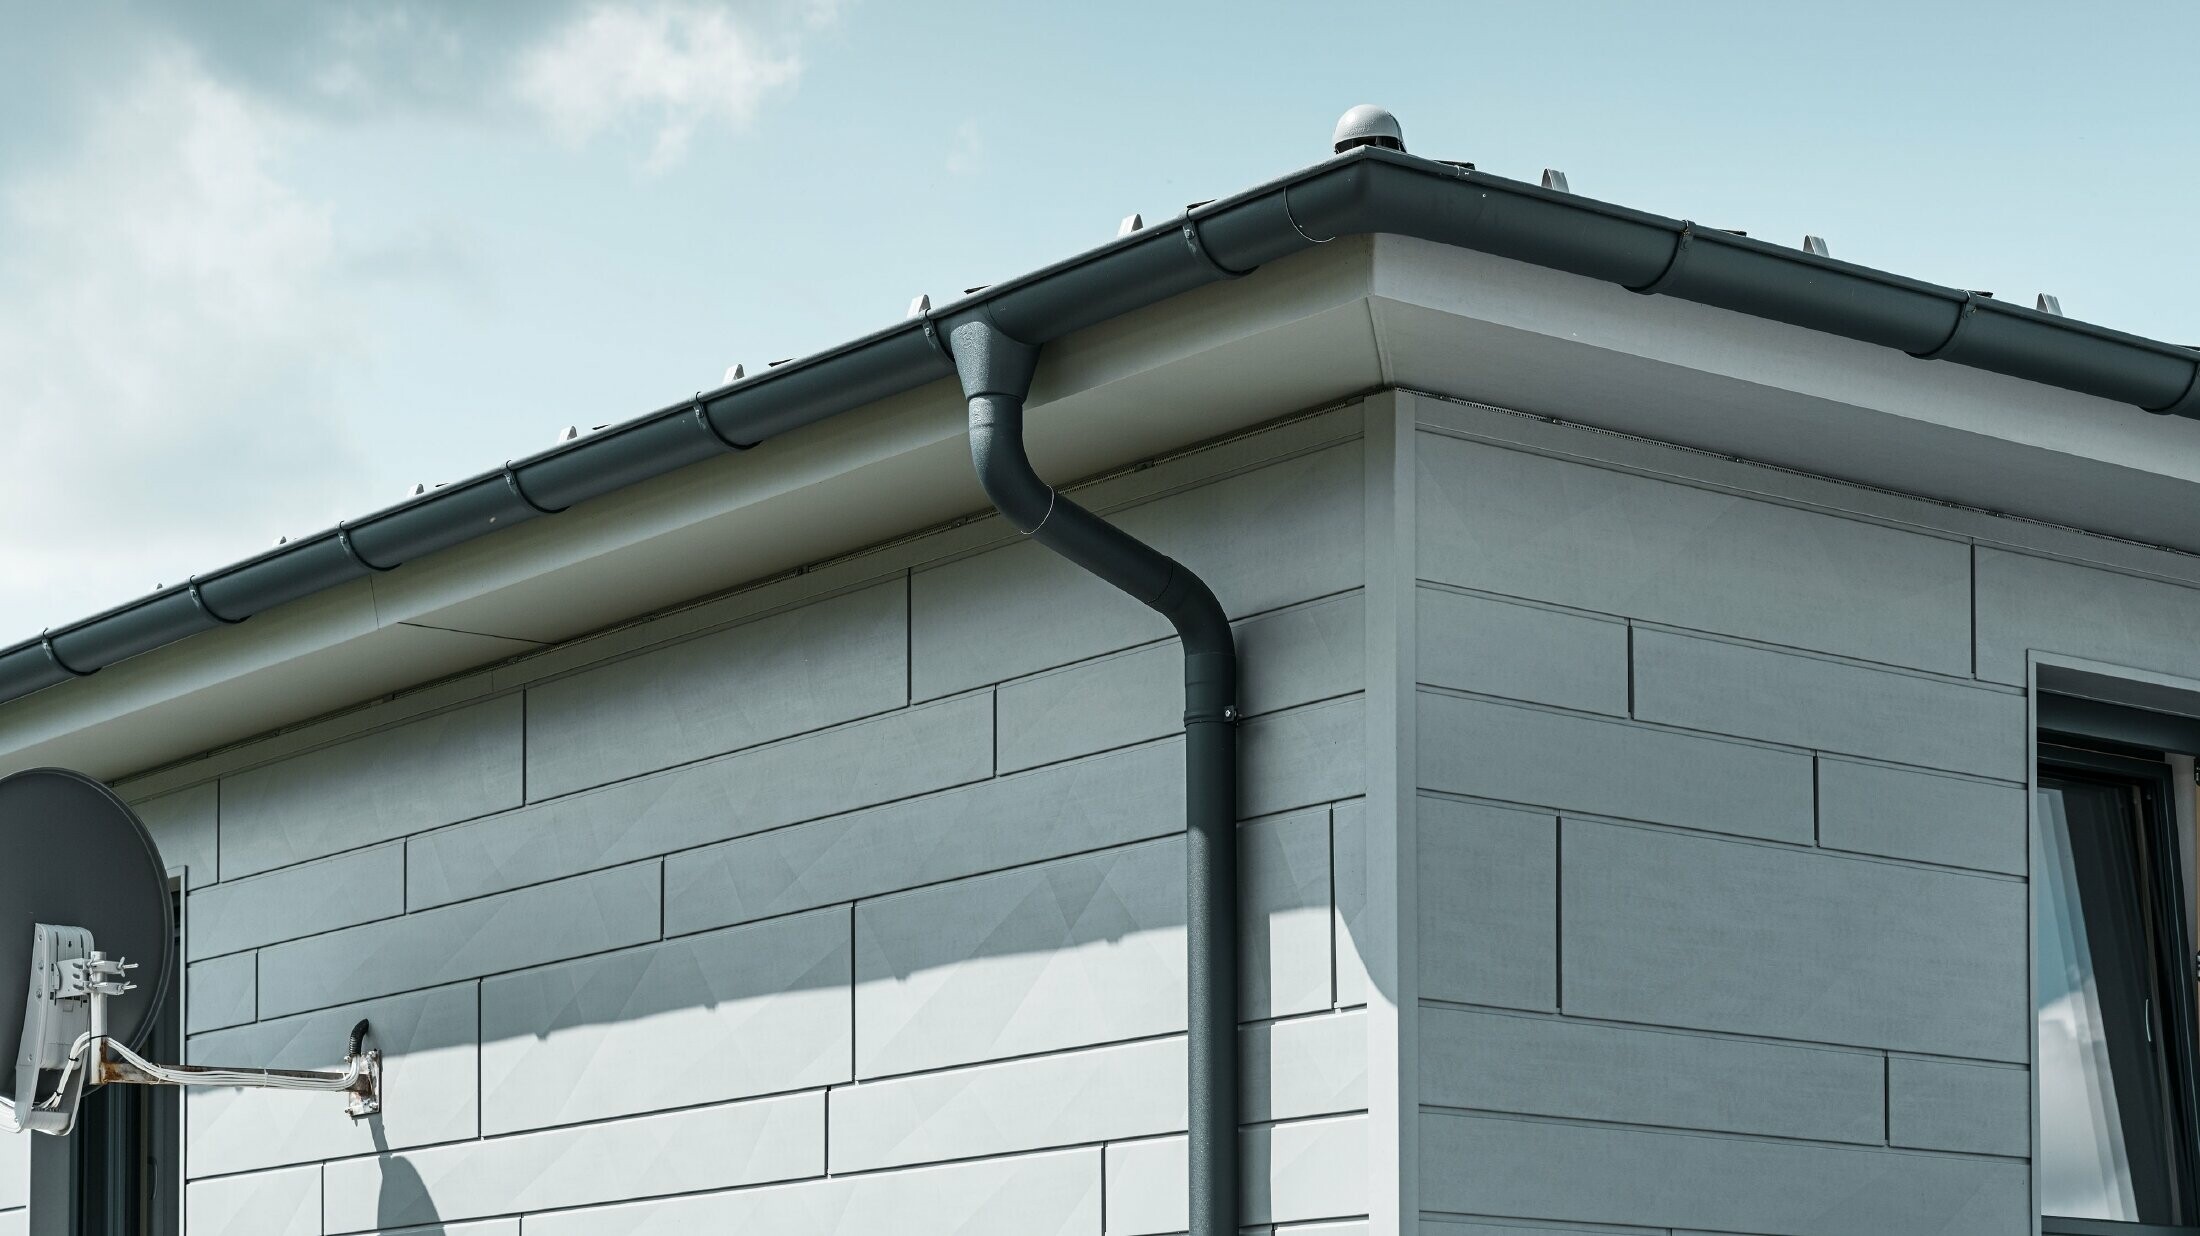 Soffitto con grondaia PREFA, bocchetta e tubo pluviale antracite con facciata in Doga.X PREFA grigio patina